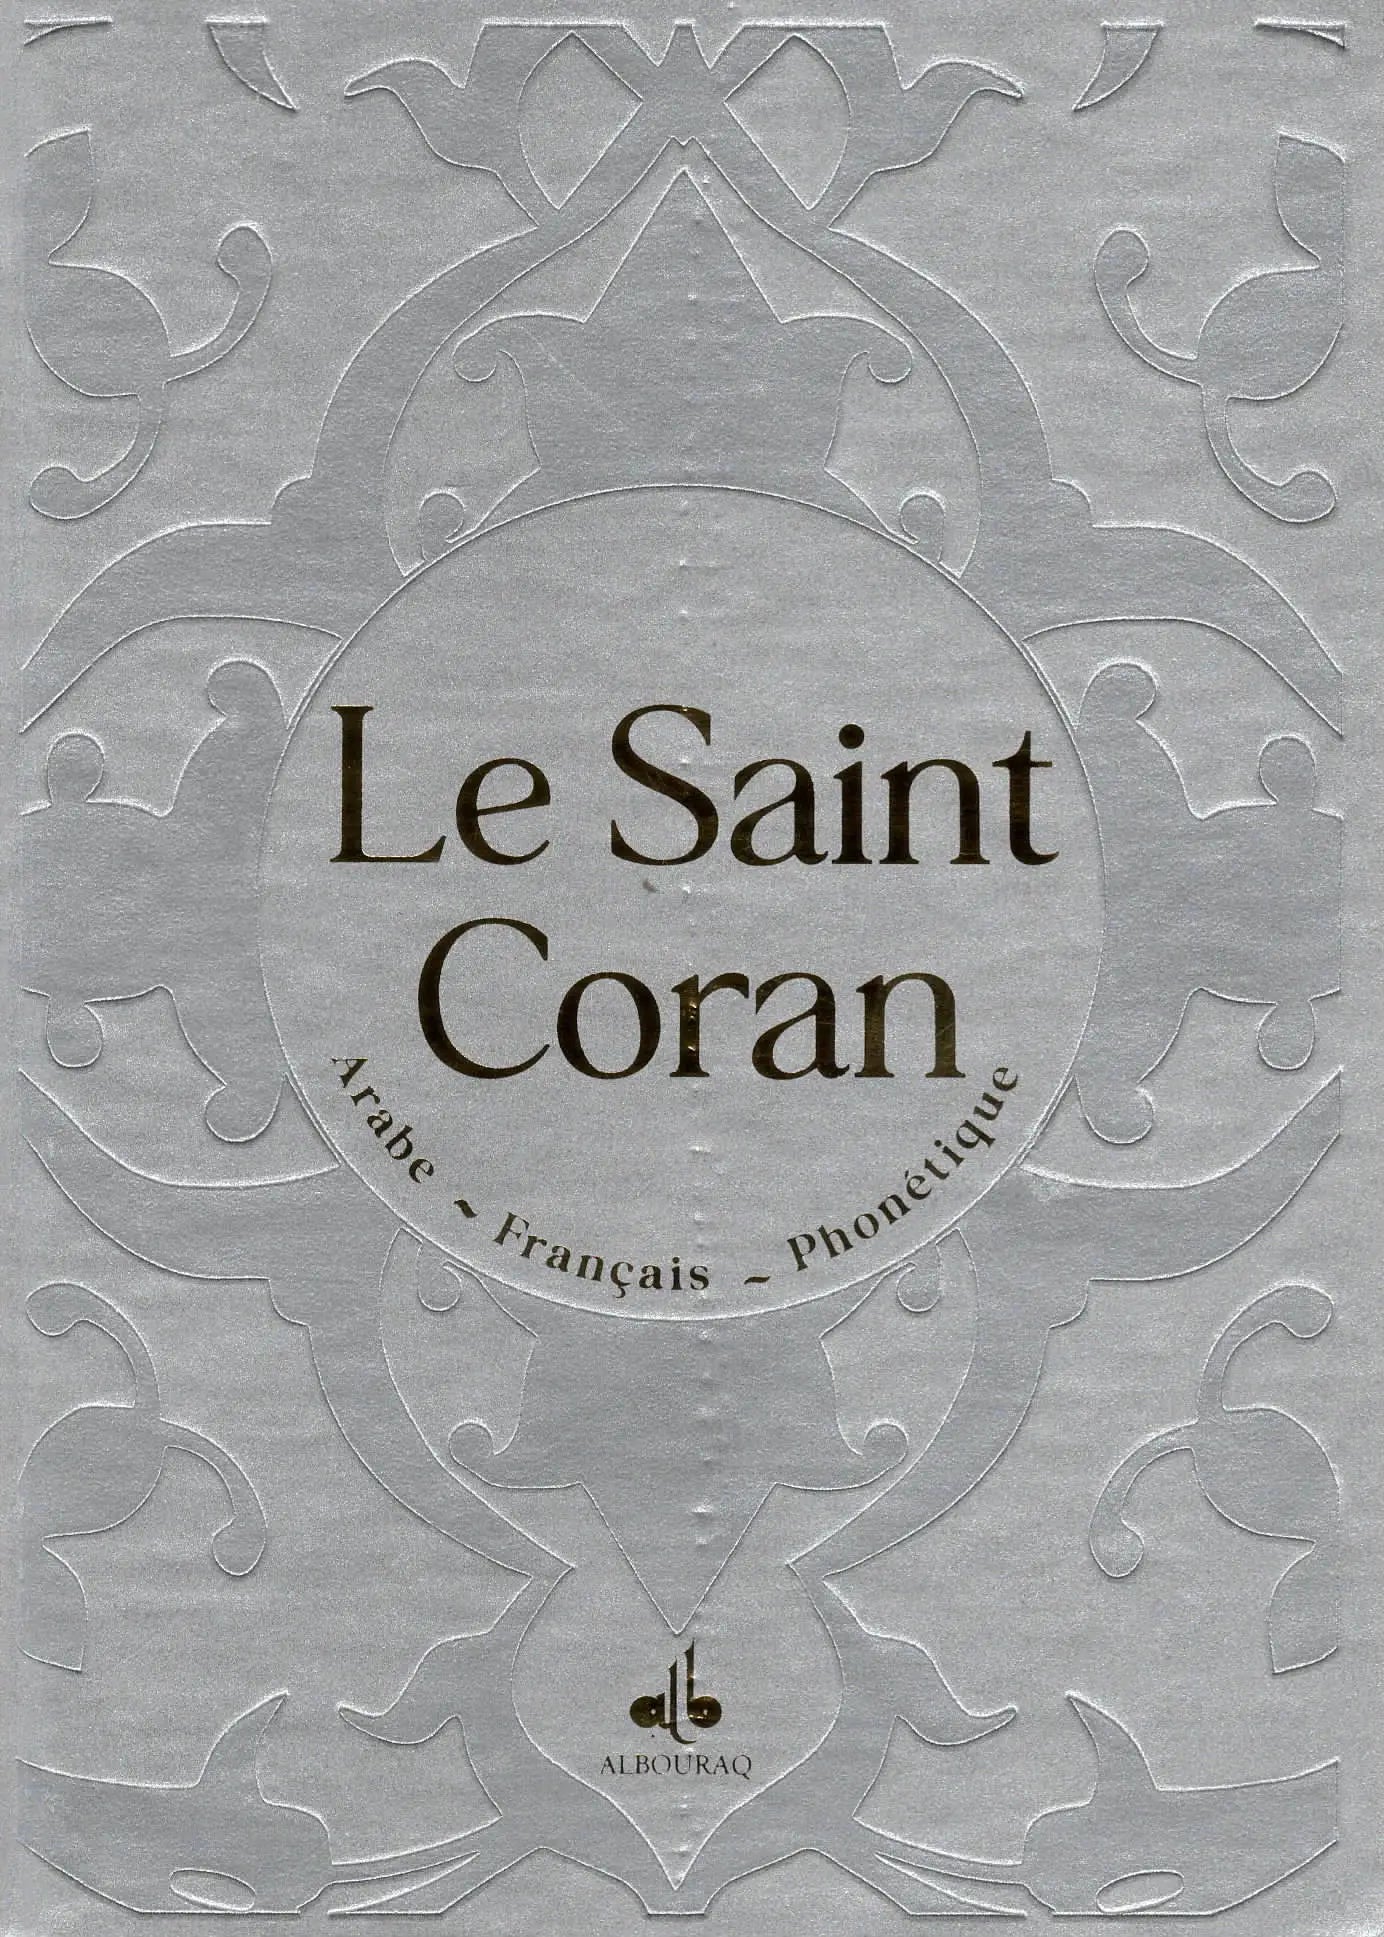 Le Saint Coran Argenté (Arabe - Français - Phonétique) - Éditions Al Bouraq